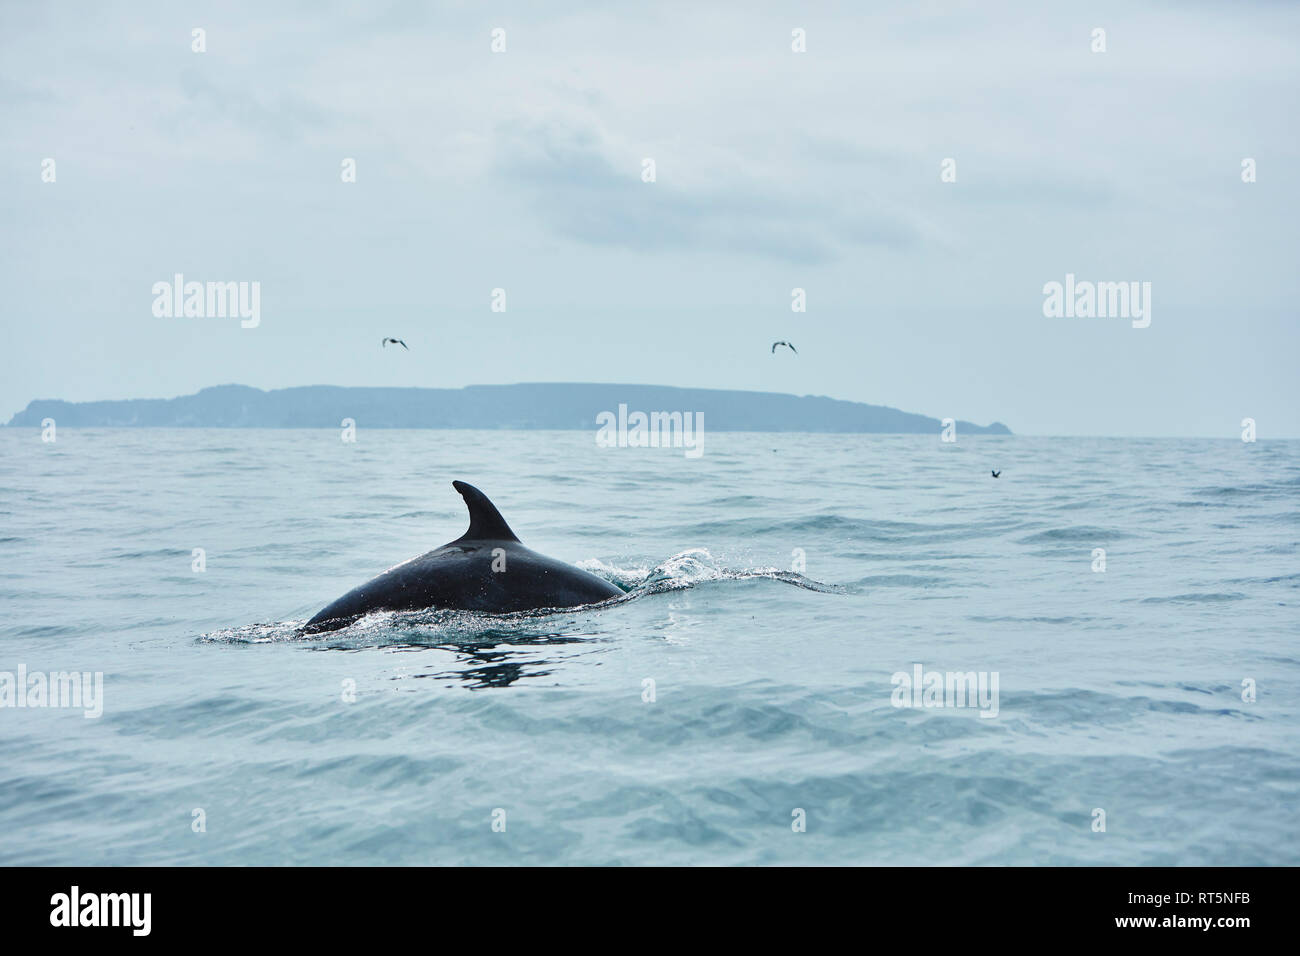 Le Chili, Coquimbo, Humboldt Penguin Réserve nationale, la baleine qui émerge de la mer Banque D'Images